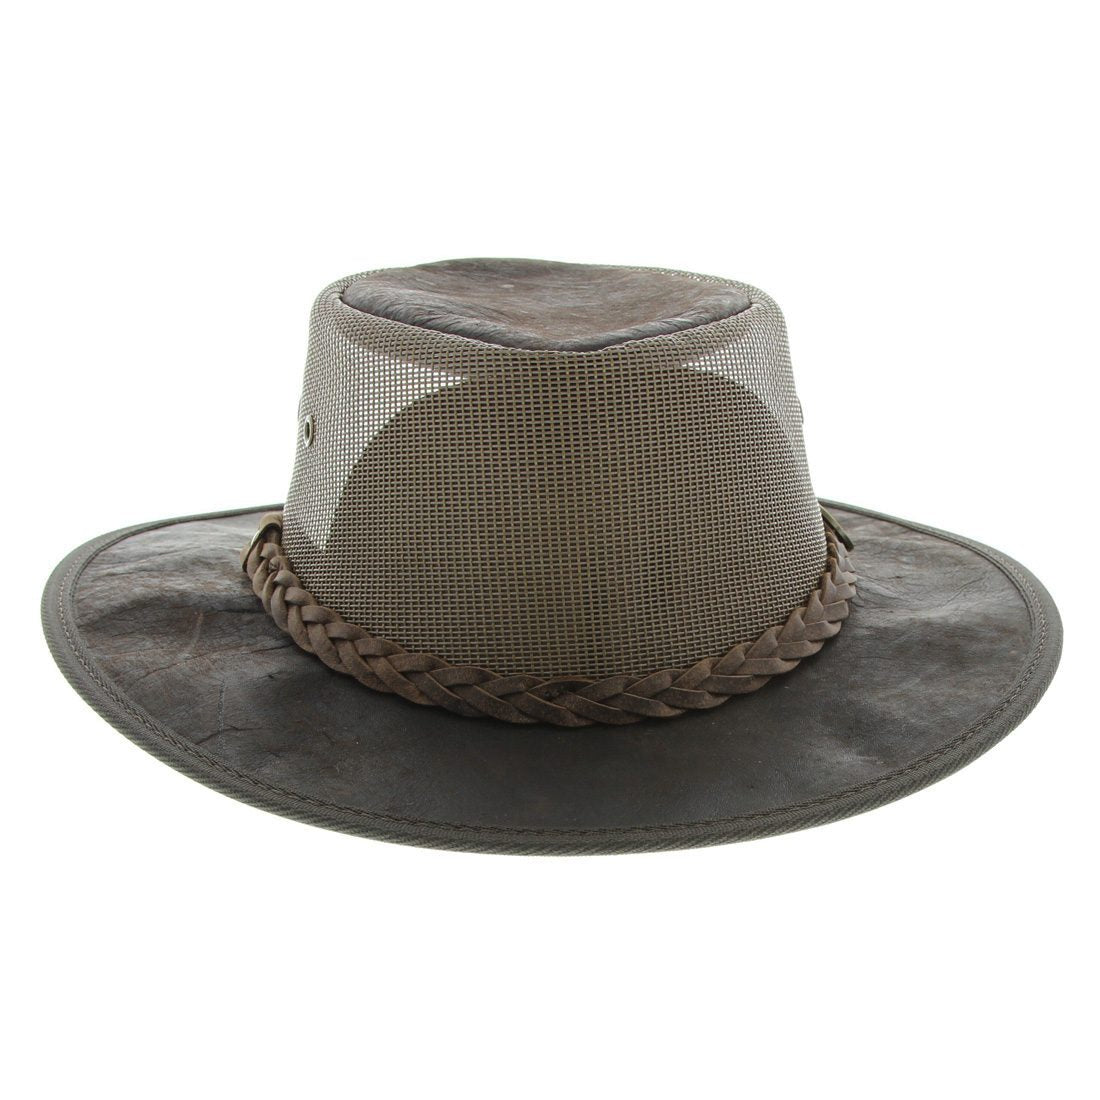 Barmah 1038BC Squashy Kangaroo Cooler Hat - Dark Brown